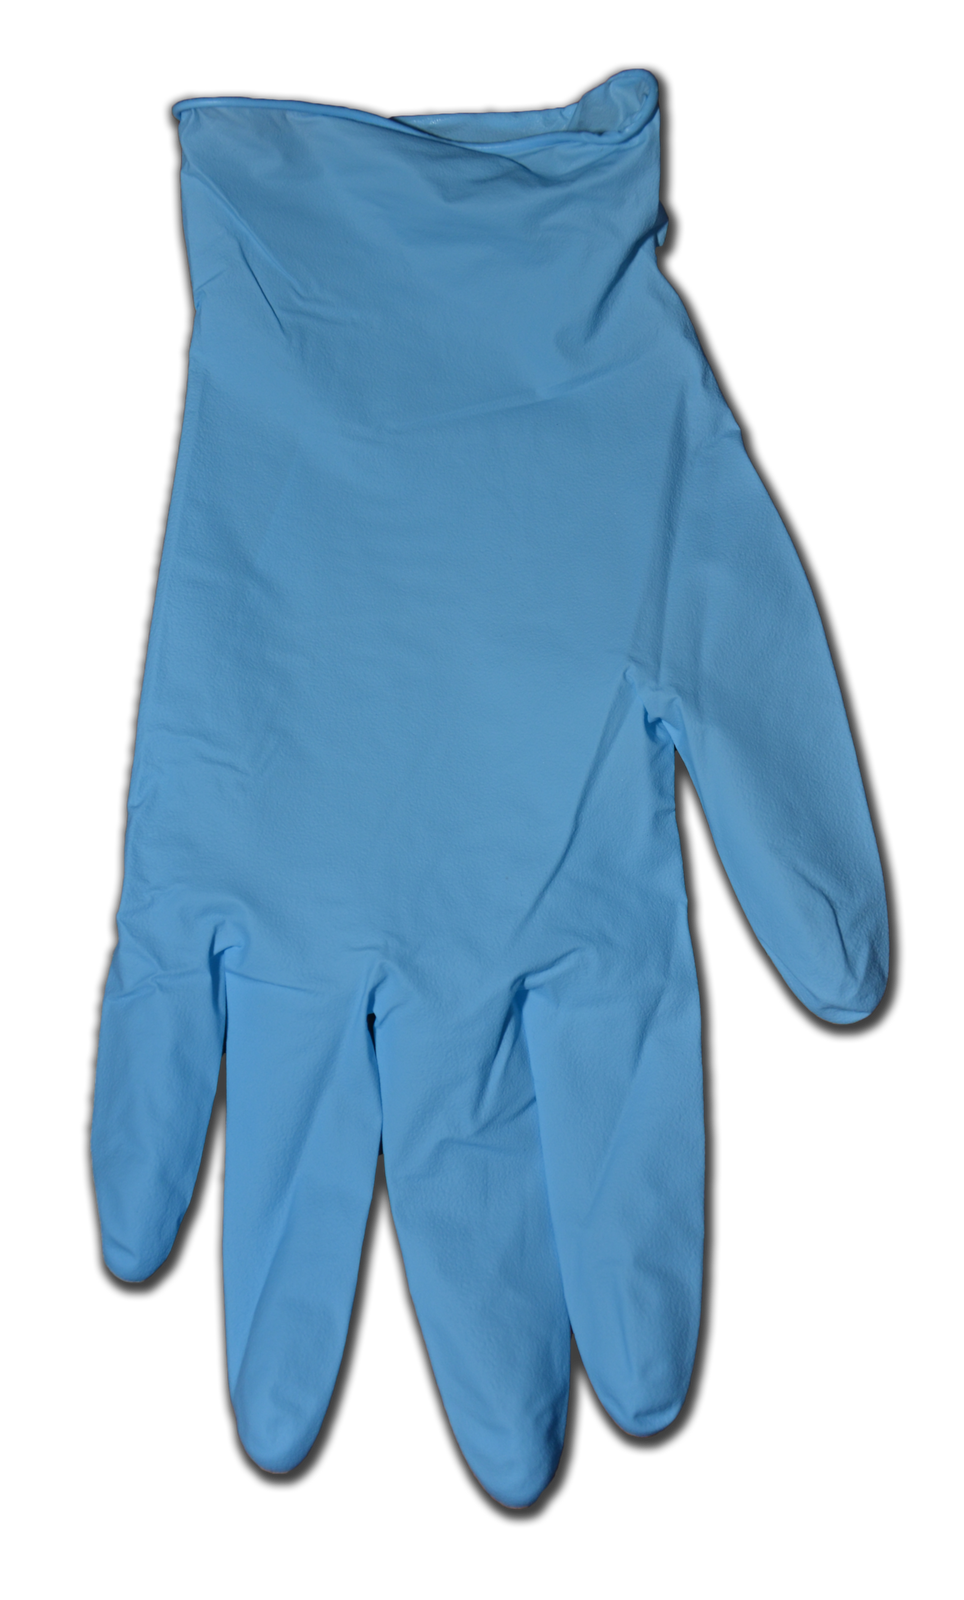 Exam Gloves - Nitrile